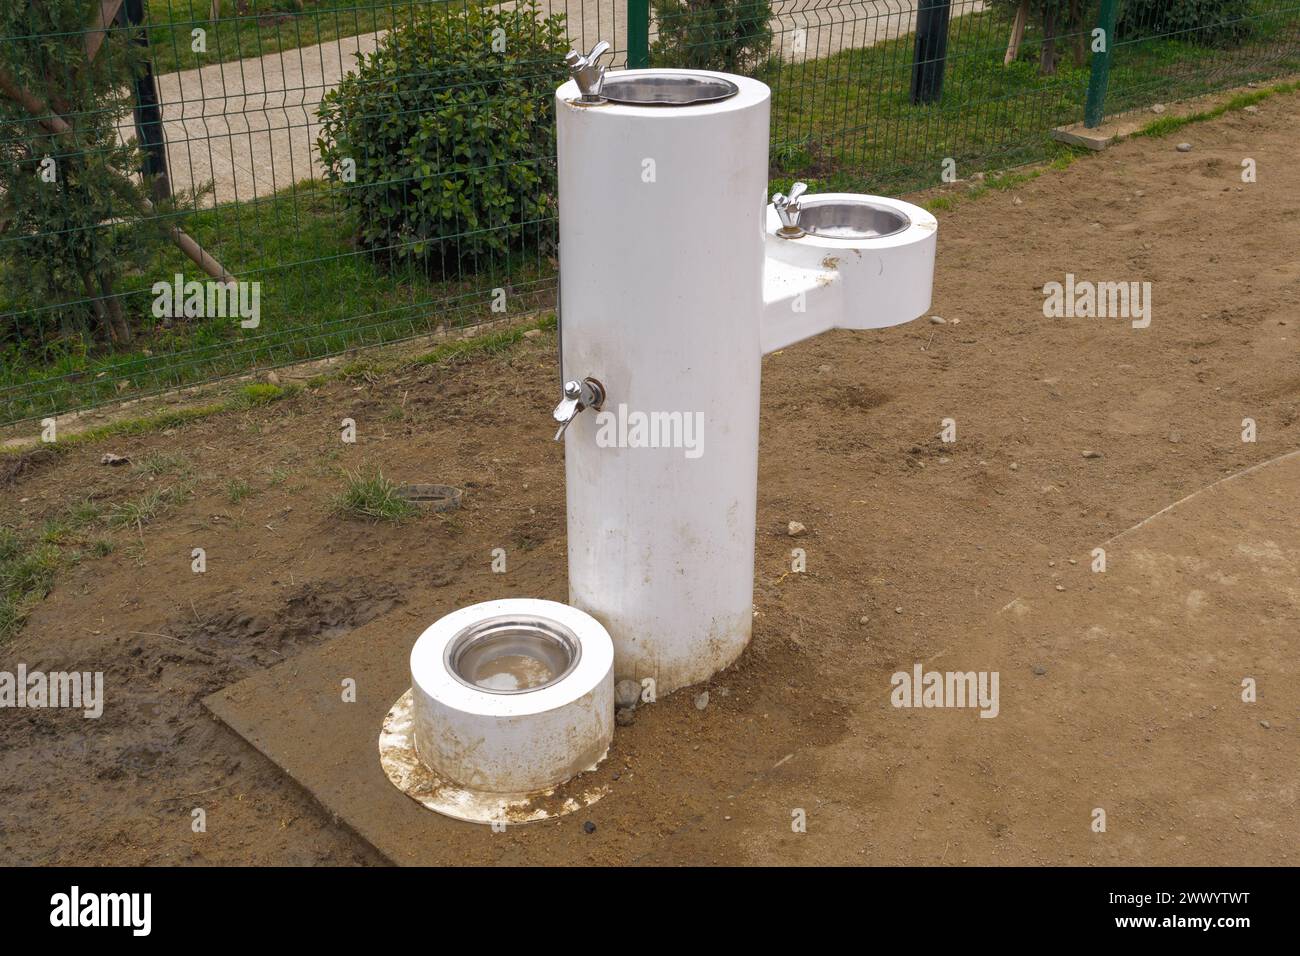 Una fontana a due livelli in cui sono ammessi gli animali domestici, progettata sia per gli esseri umani che per i cani in un parco, che mostra il beccuccio più alto e il bacino accanto a una ciotola inferiore per cani. Foto Stock